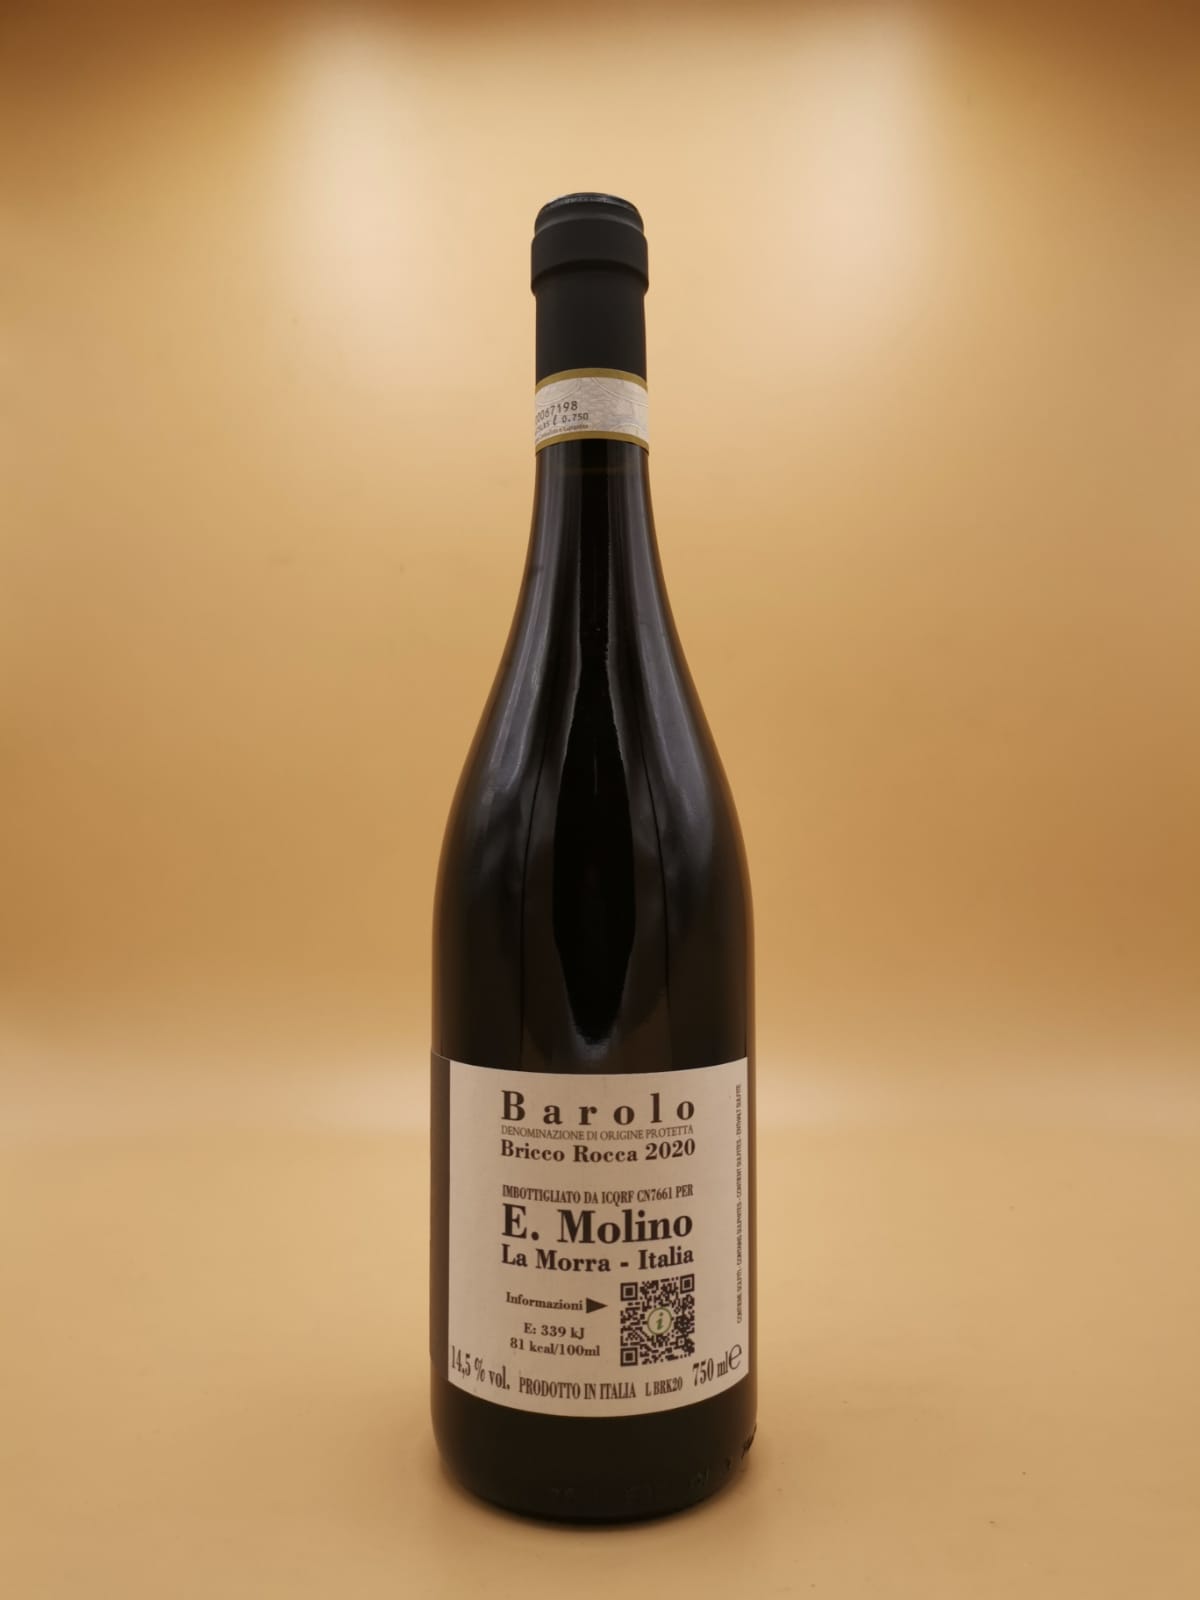 Barolo Bricco Rocca 2020 E. Molino | Vin et Alchimie